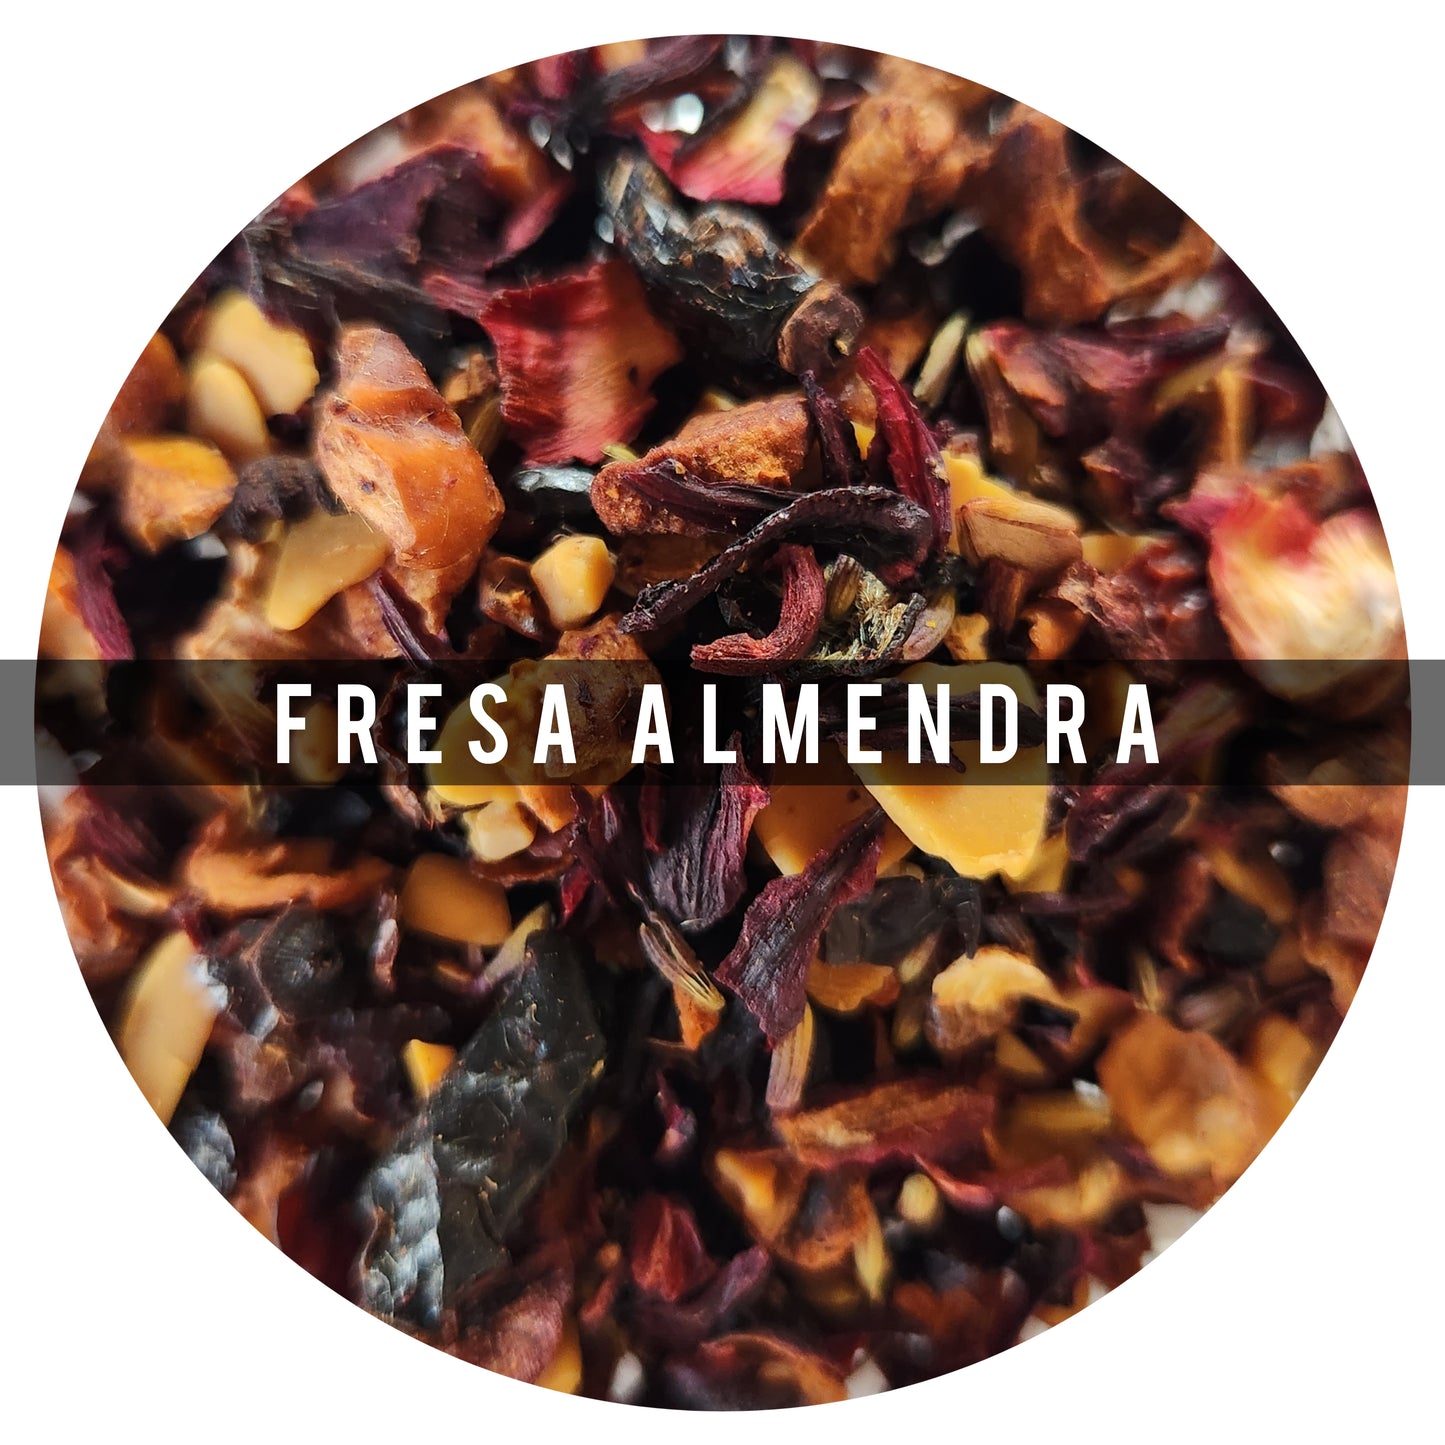 Fresa Almendras 100g: Inspirada en un muffin recién horneado, al primer sorbo la fresa y almendras están ala vanguardia, le siguen el aroma penetrante de la lavanda
Ingredientes: Hibisco, Lavanda, Rosa Mosqueta, Almendras, Fresas, Manzanas